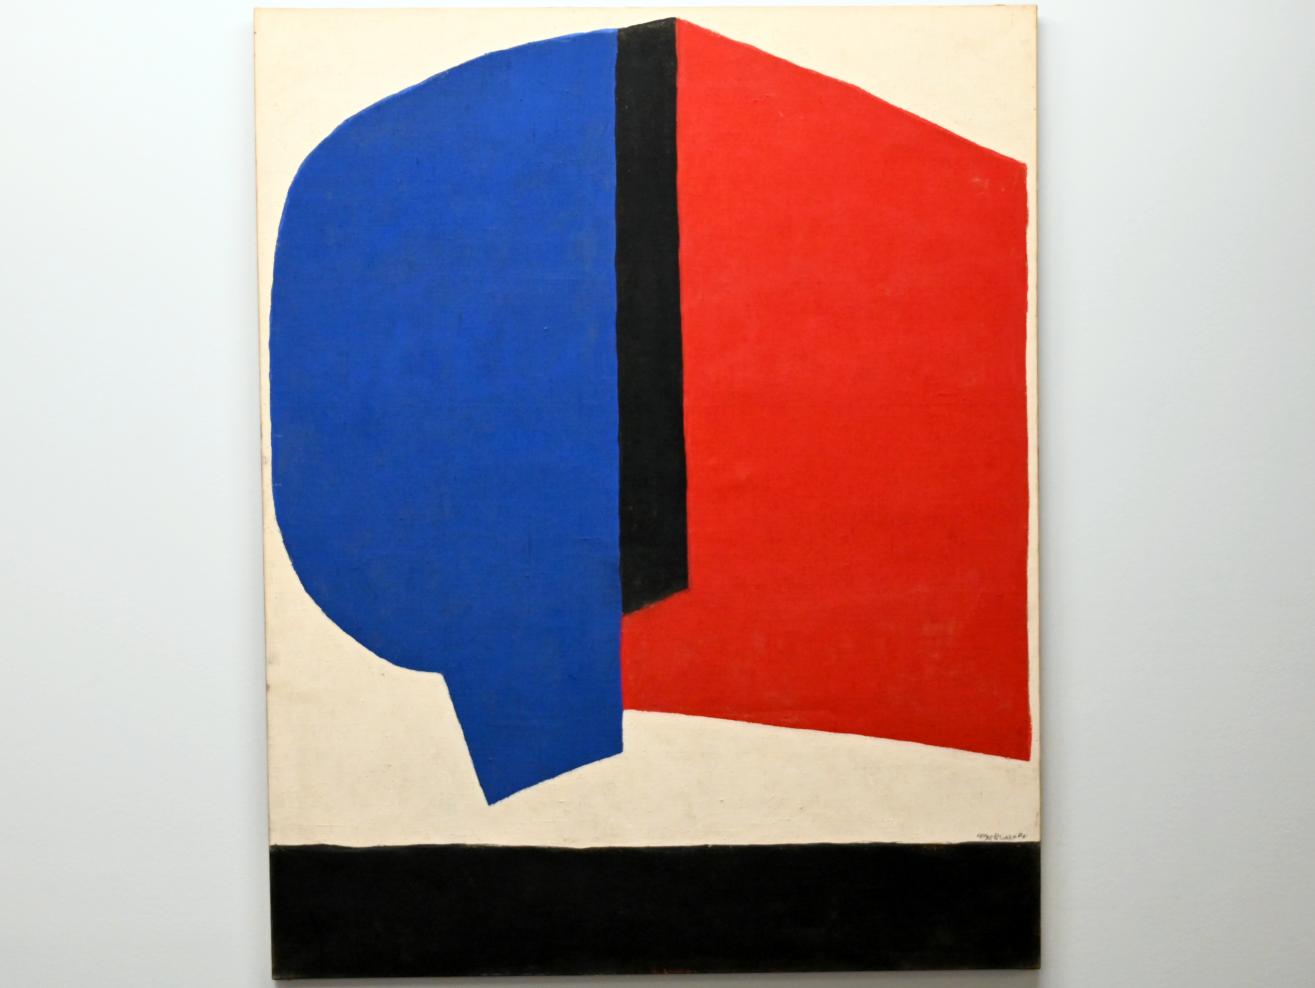 Serge Poliakoff (1936–1968), Abstrakte Komposition, Chemnitz, Museum Gunzenhauser, Saal 2.1 - Serge Poliakoff, 1968